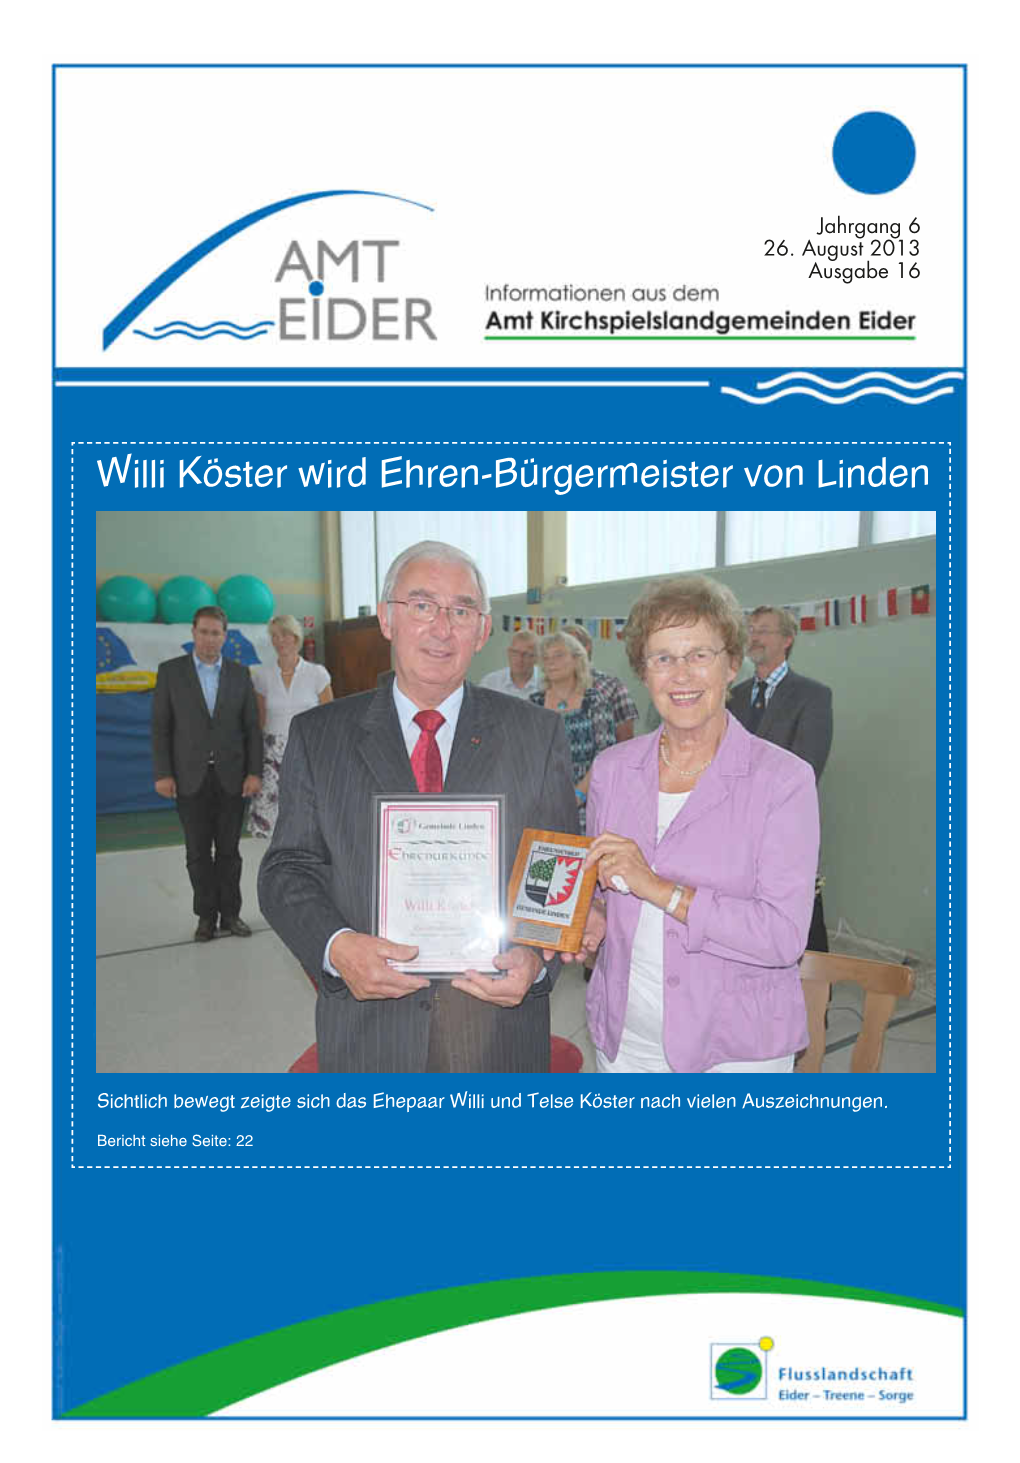 Willi Köster Wird Ehren-Bürgermeister Von Linden